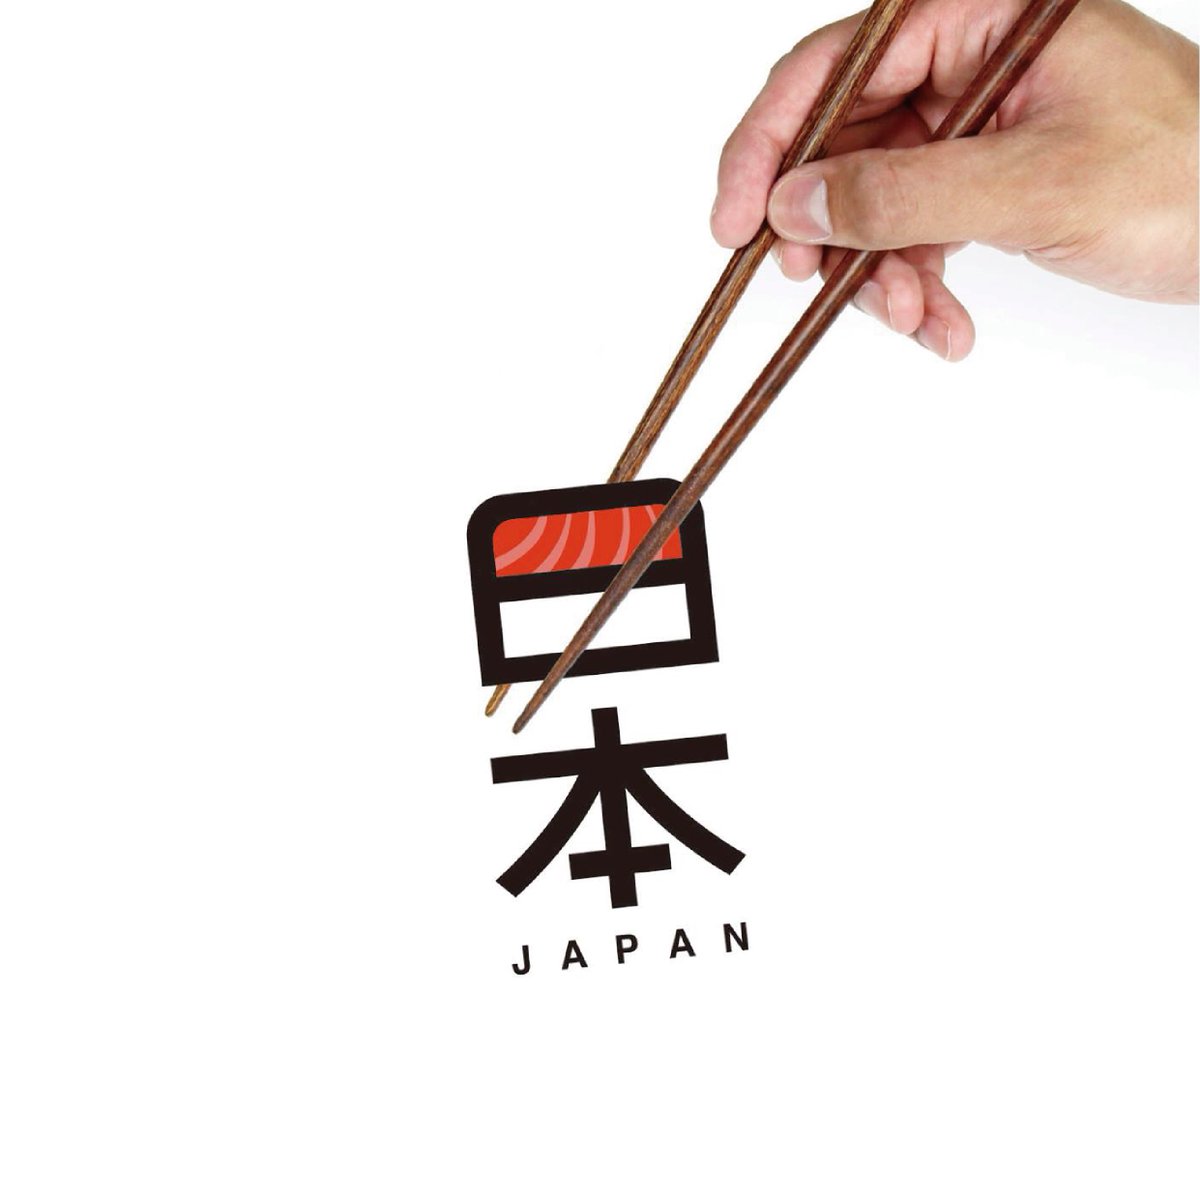 chopsticks white background simple background holding fingernails out of frame  illustration images